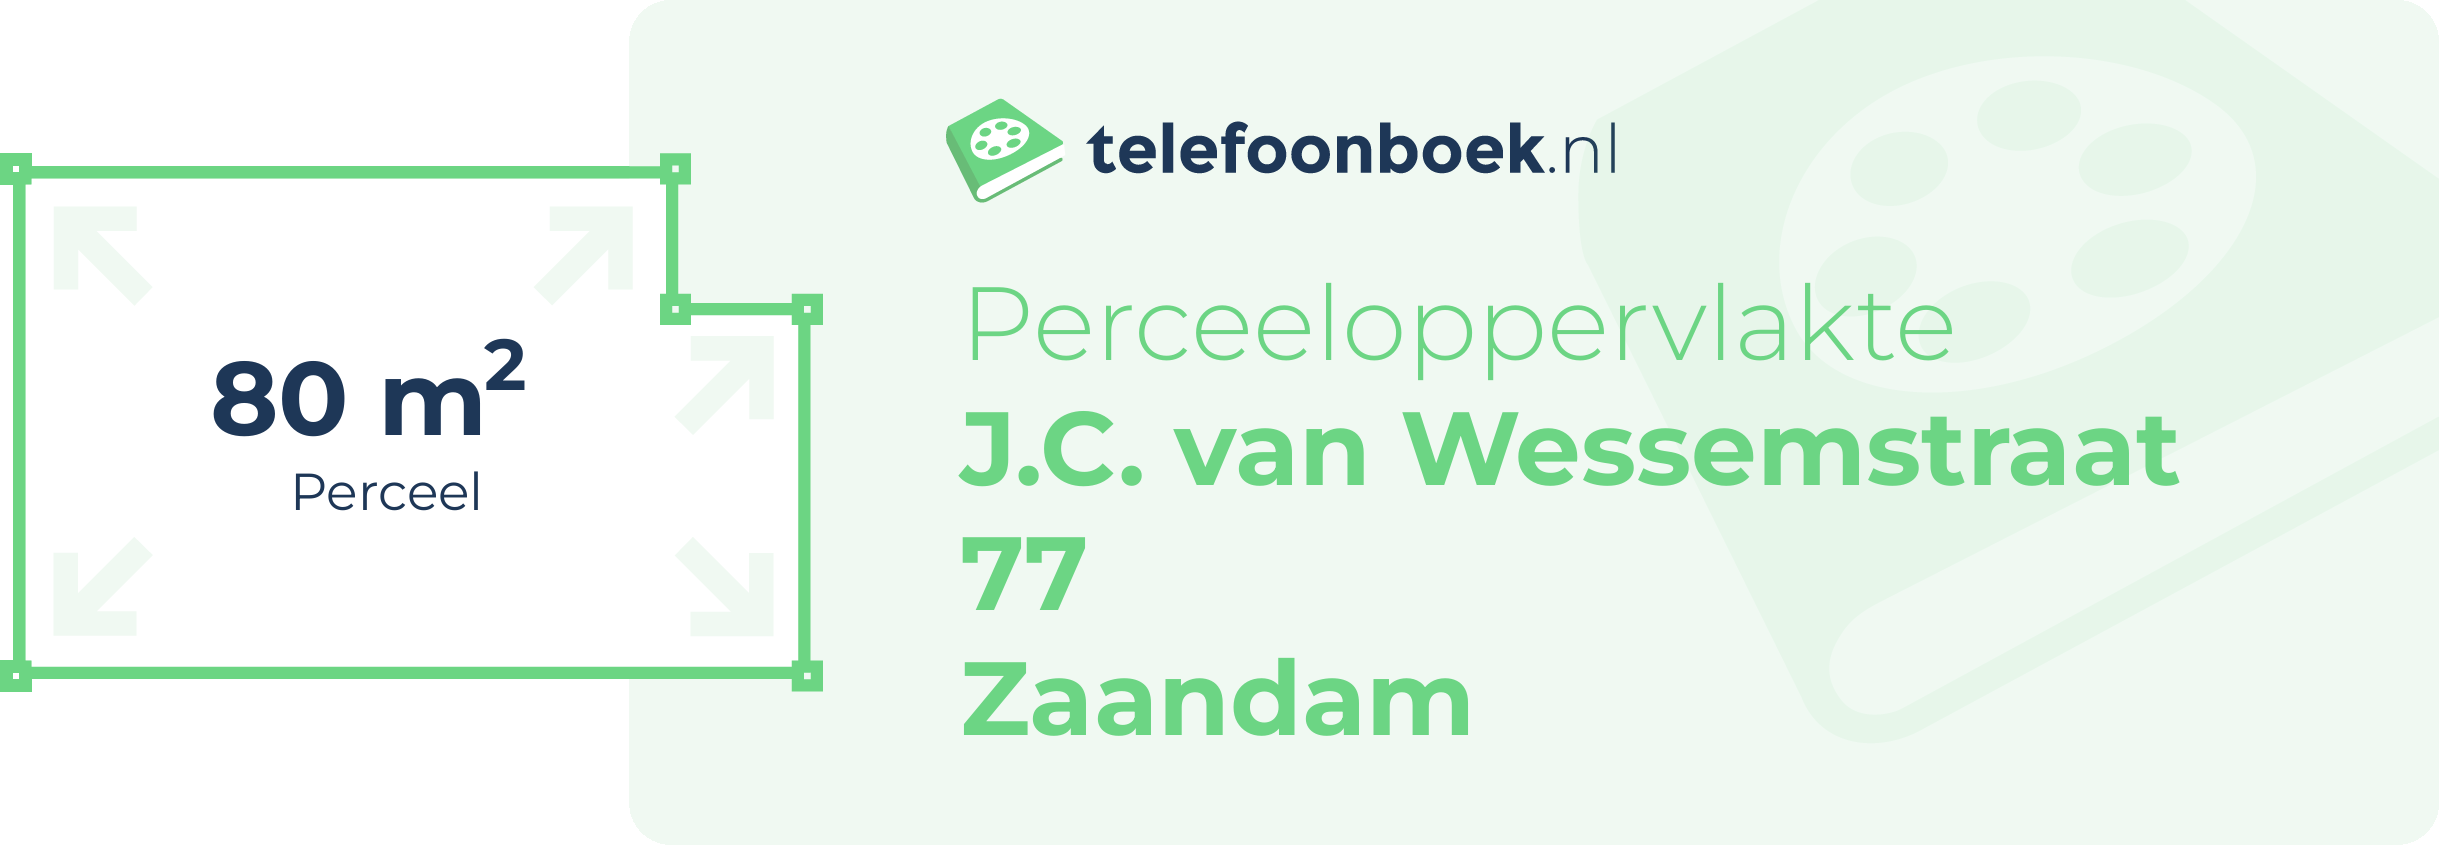 Perceeloppervlakte J.C. Van Wessemstraat 77 Zaandam